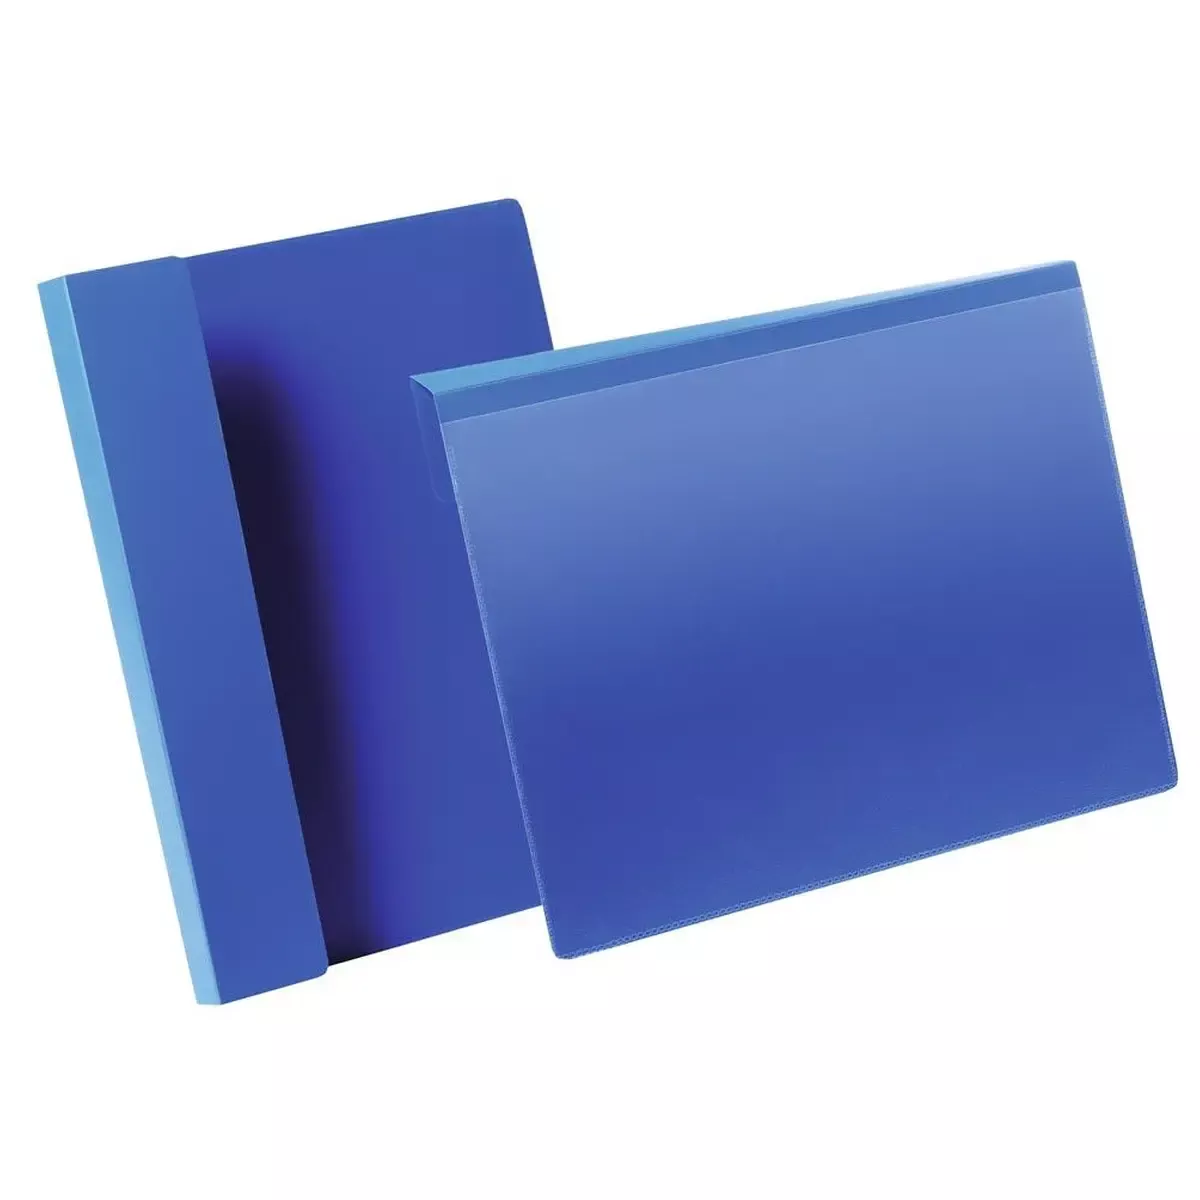 Regale Kennzeichnungstasche mit Falz, A5 Querformat, BxH innen 210x148 mm, Farbe dunkelblau, VE 50 Stück für Lager